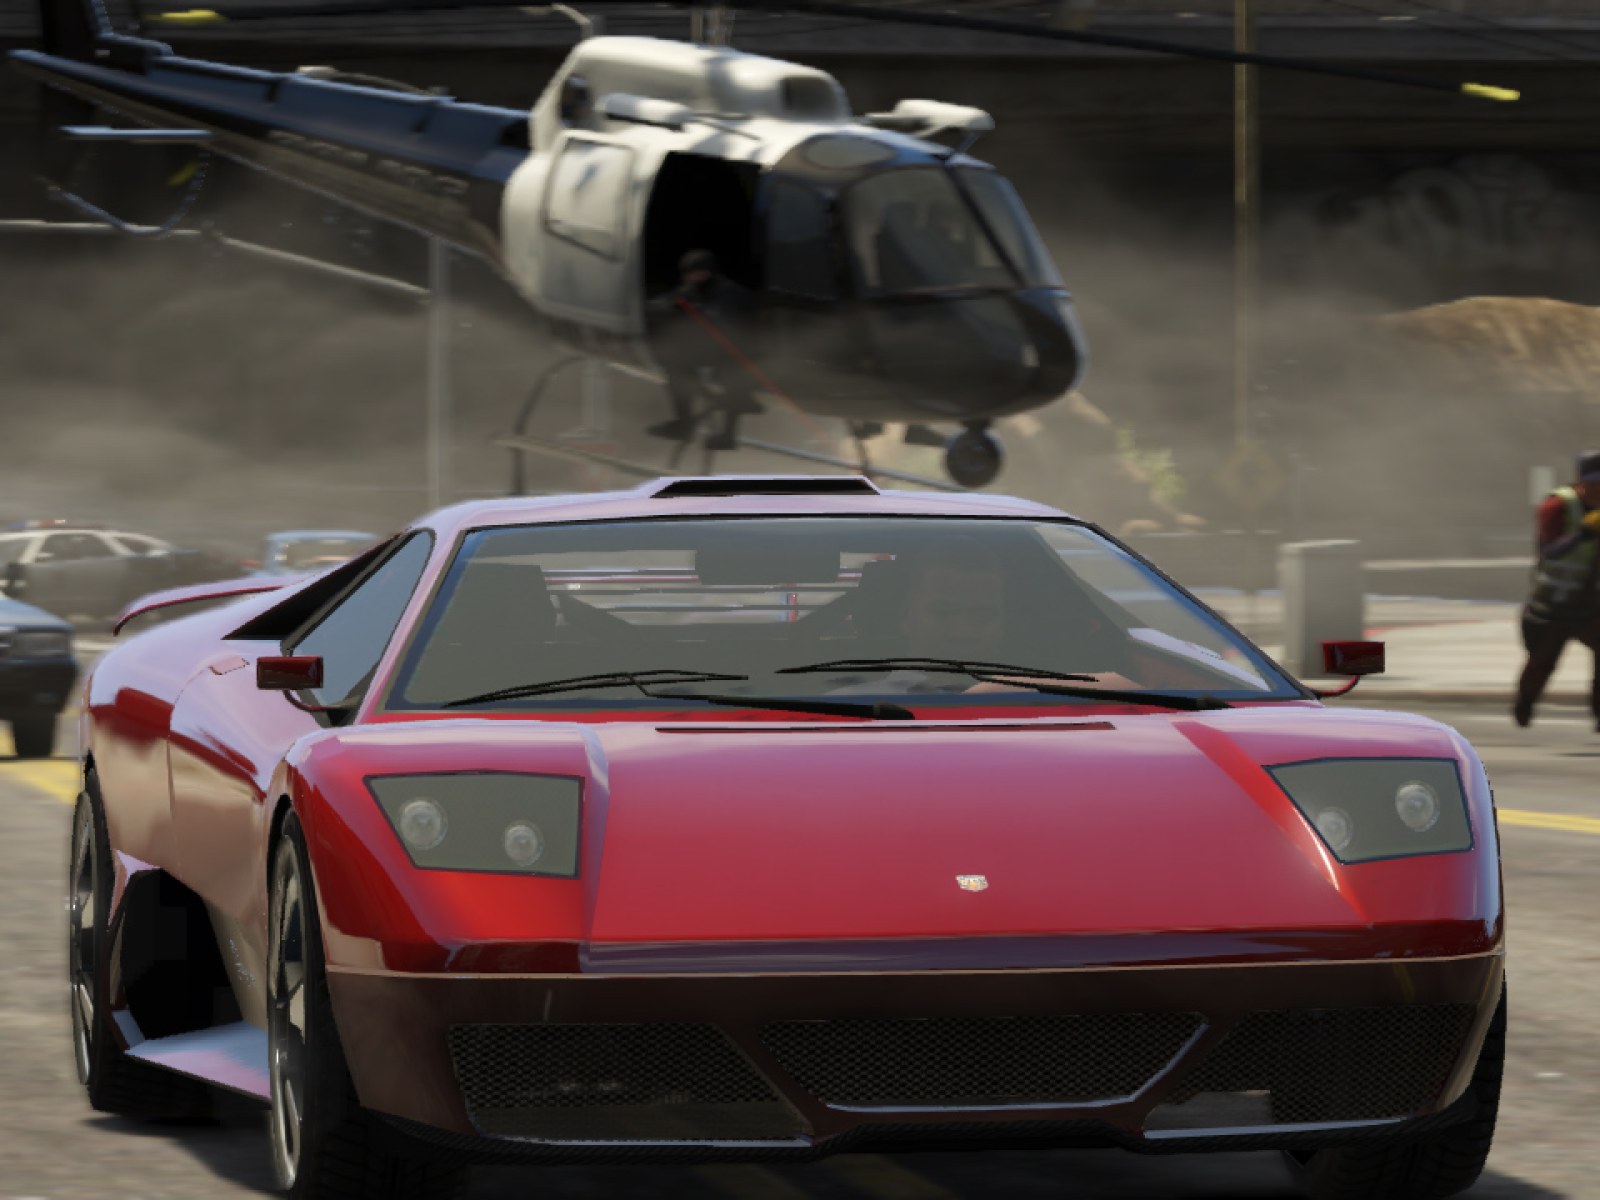 Grand Theft Auto VI could upset Grand Theft Auto V record: trailer